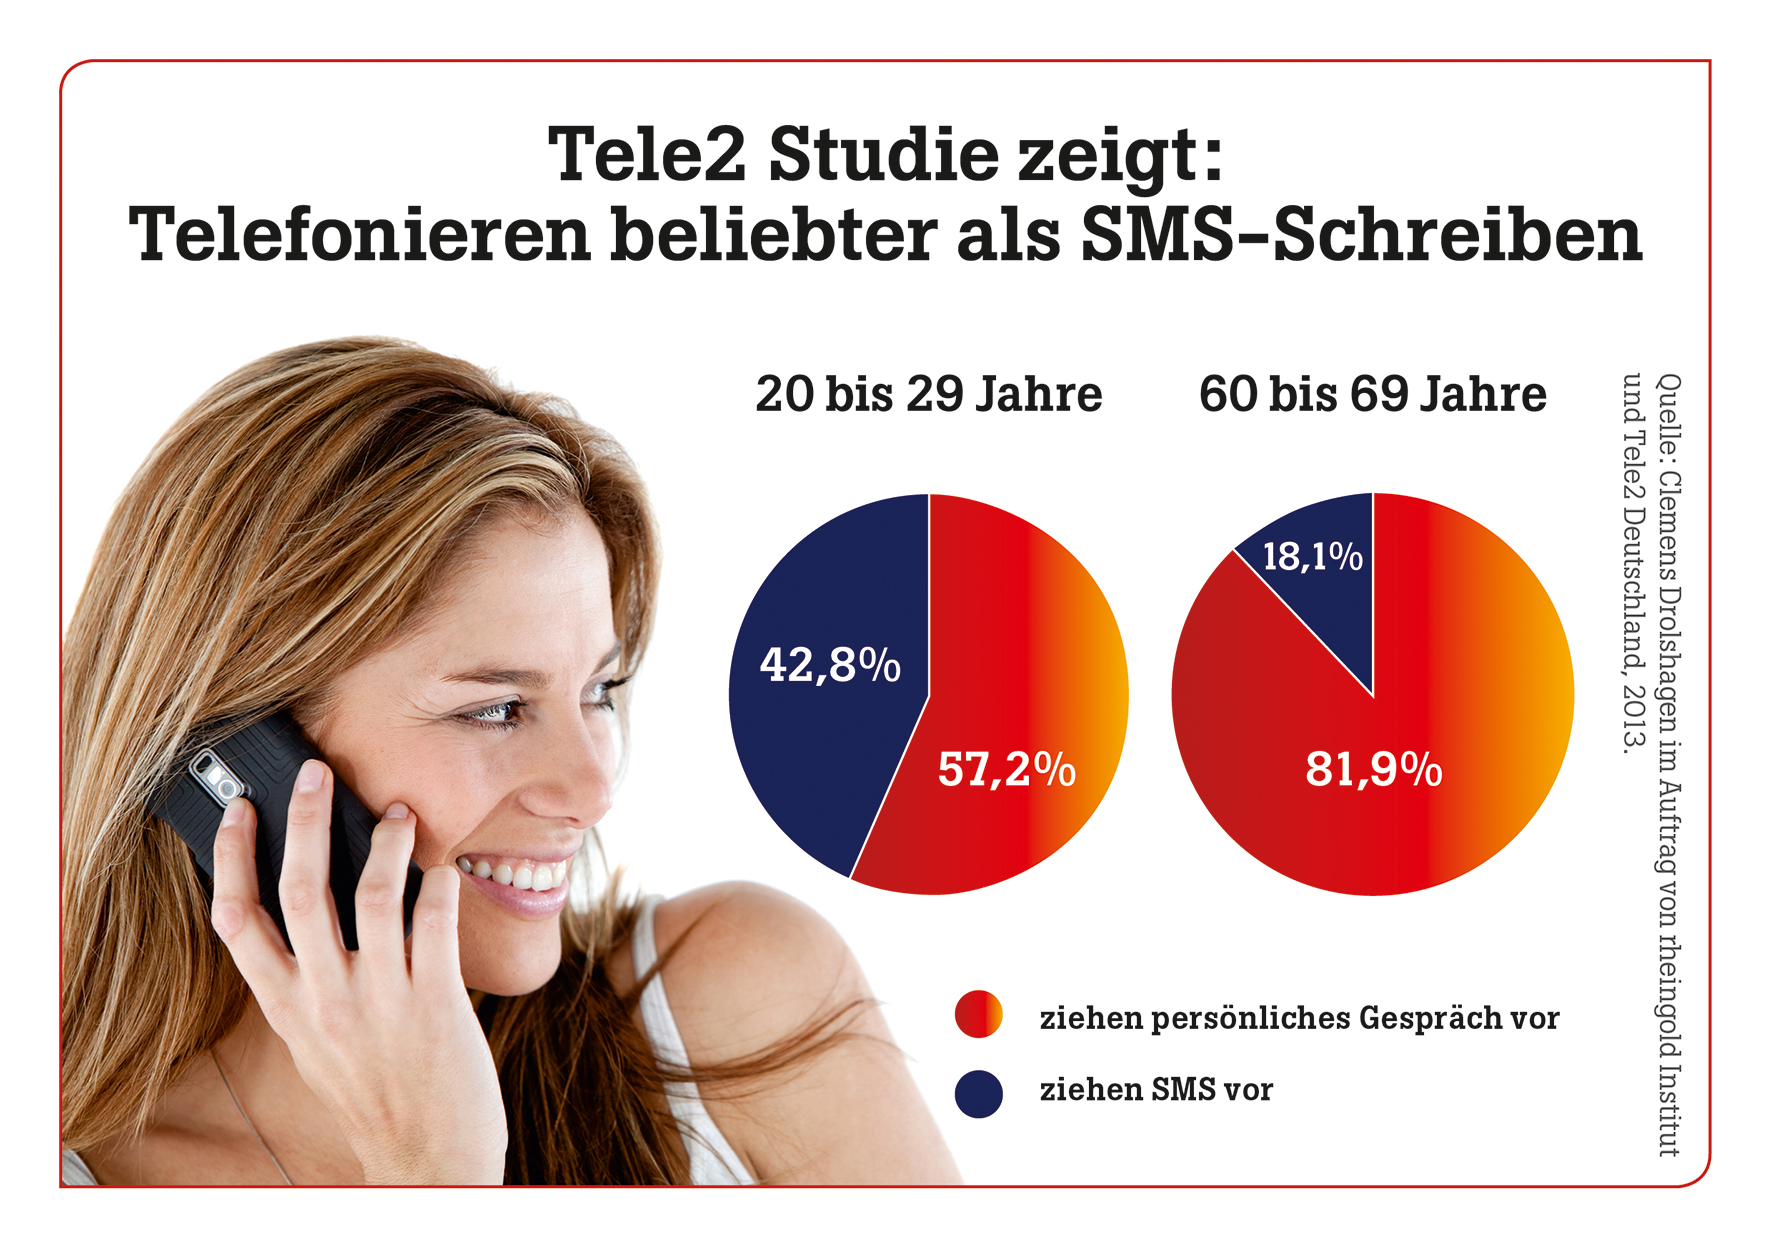 Tele2 Studie zeigt: Mobilfunknutzer wollen vor allem telefonieren